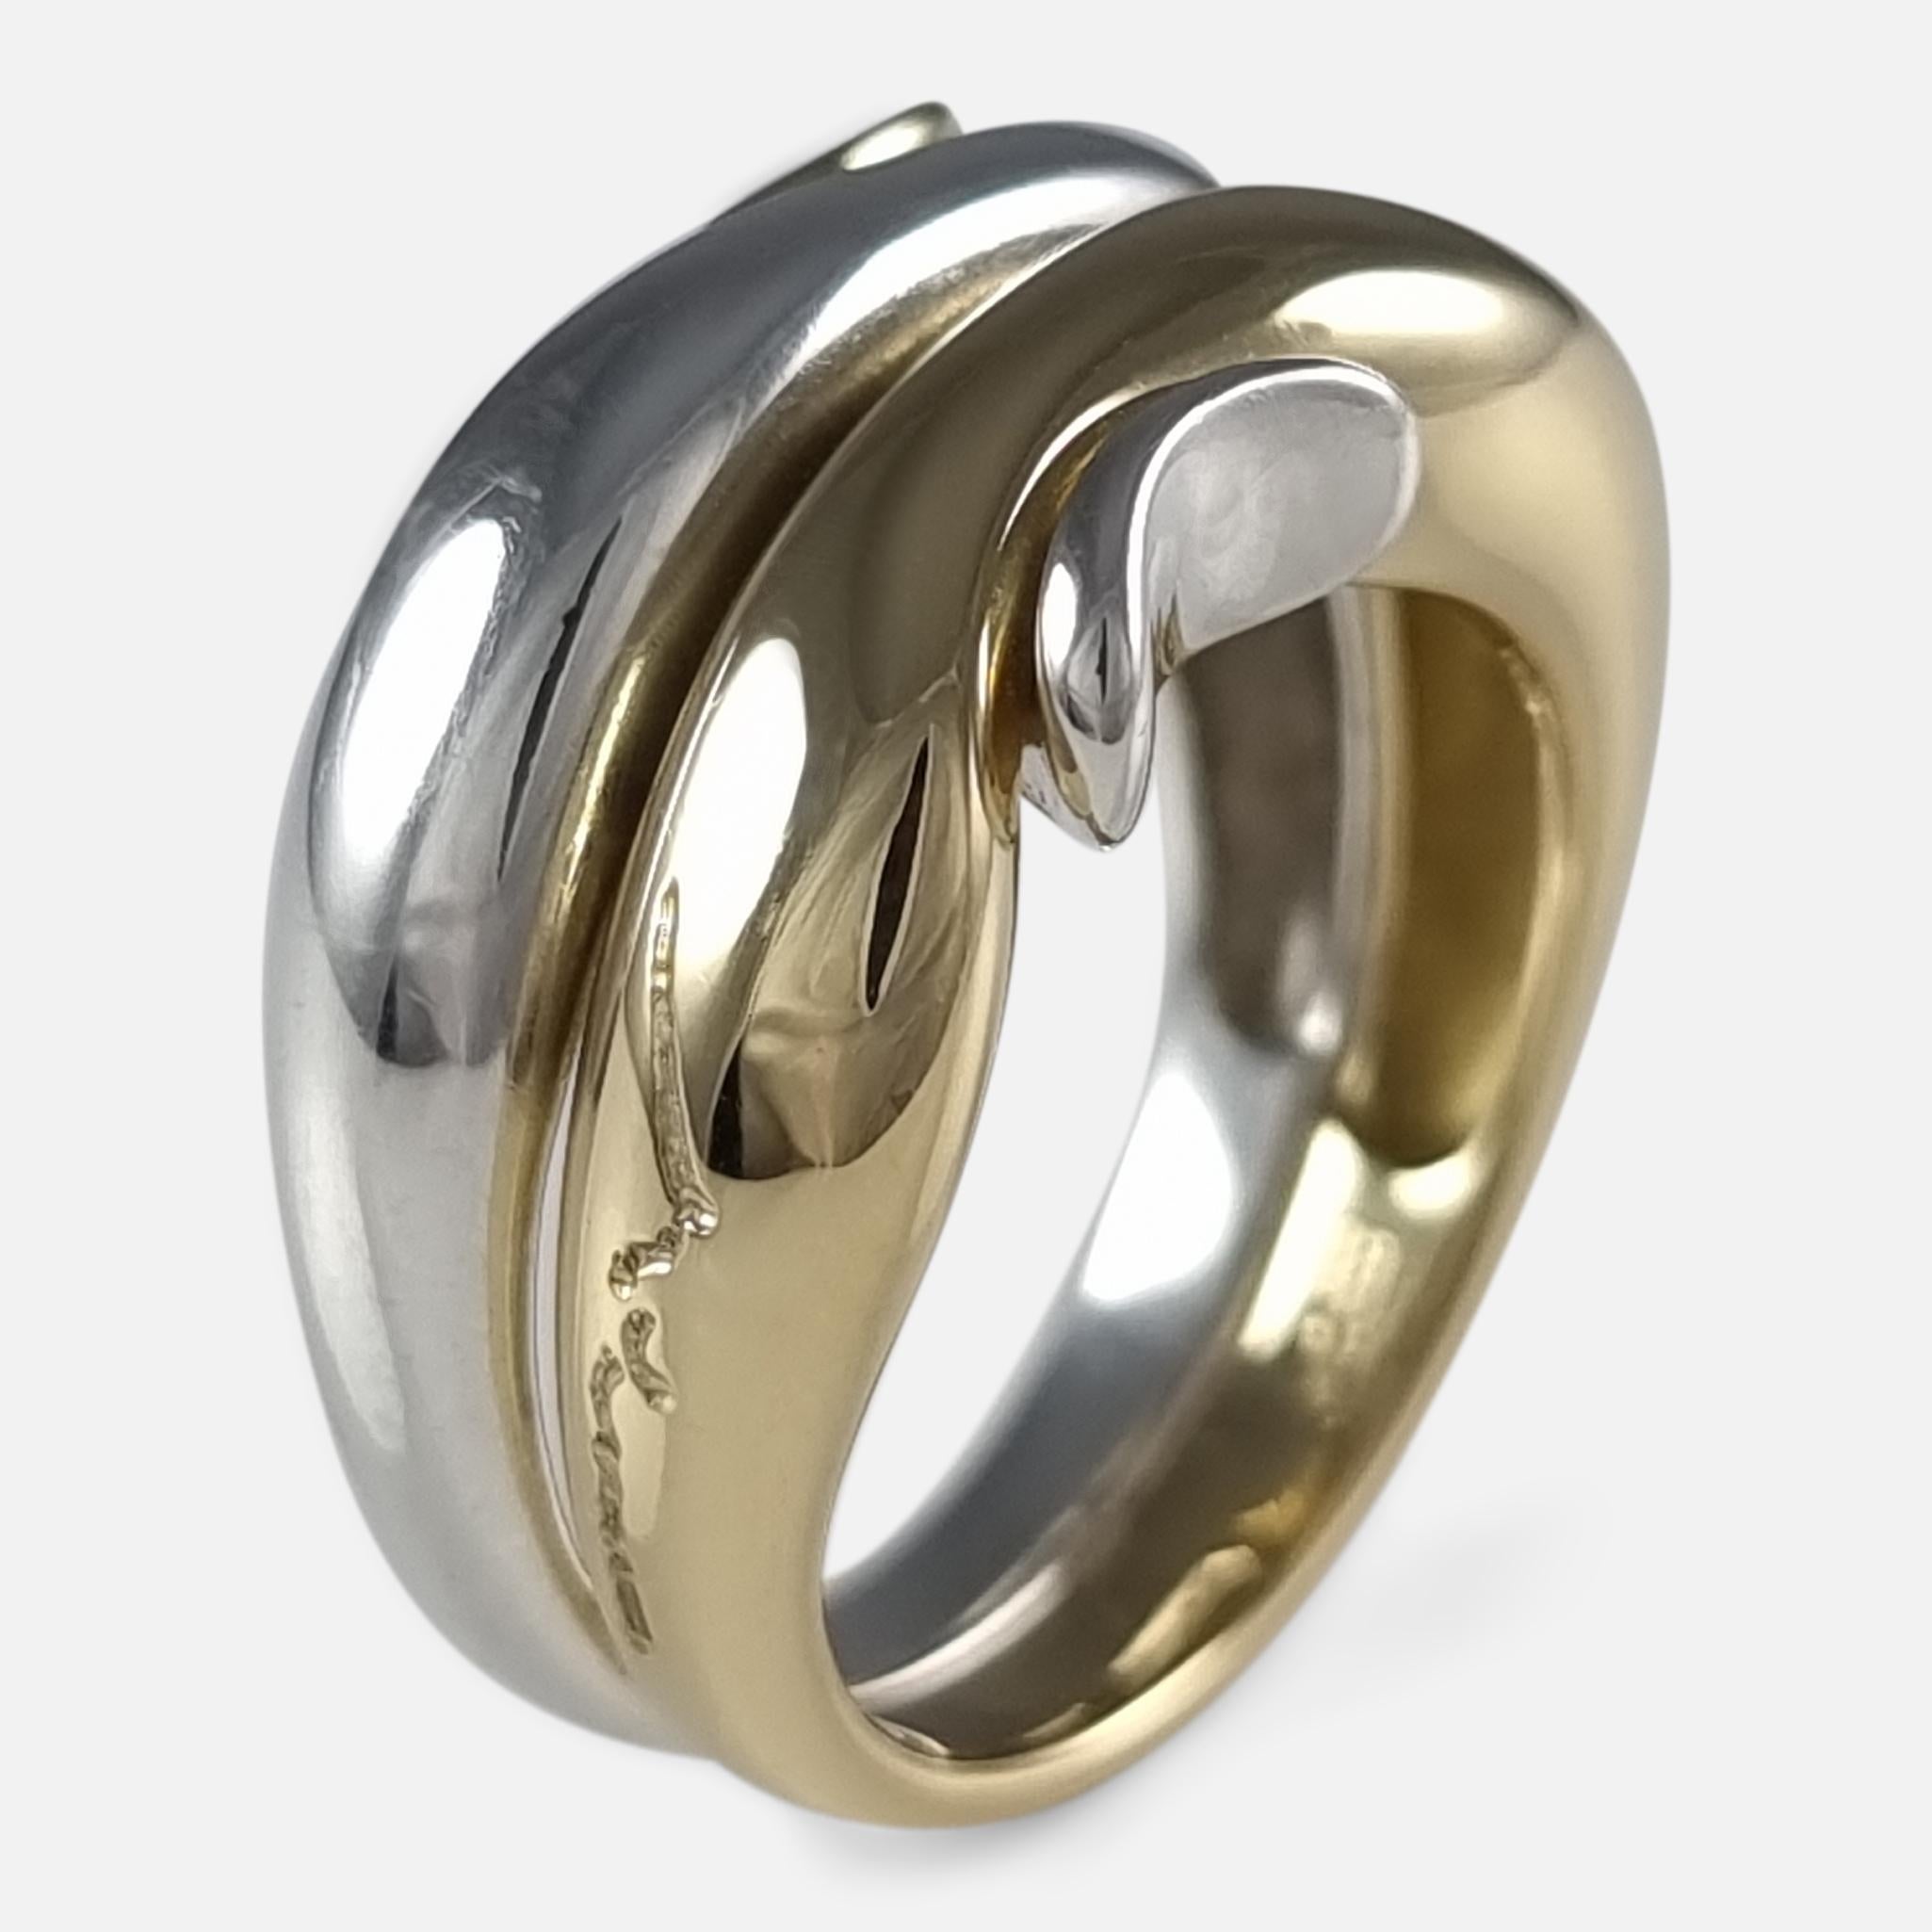 George Jensen 18ct Gold & Silver Ring, Minas Spiridis 10